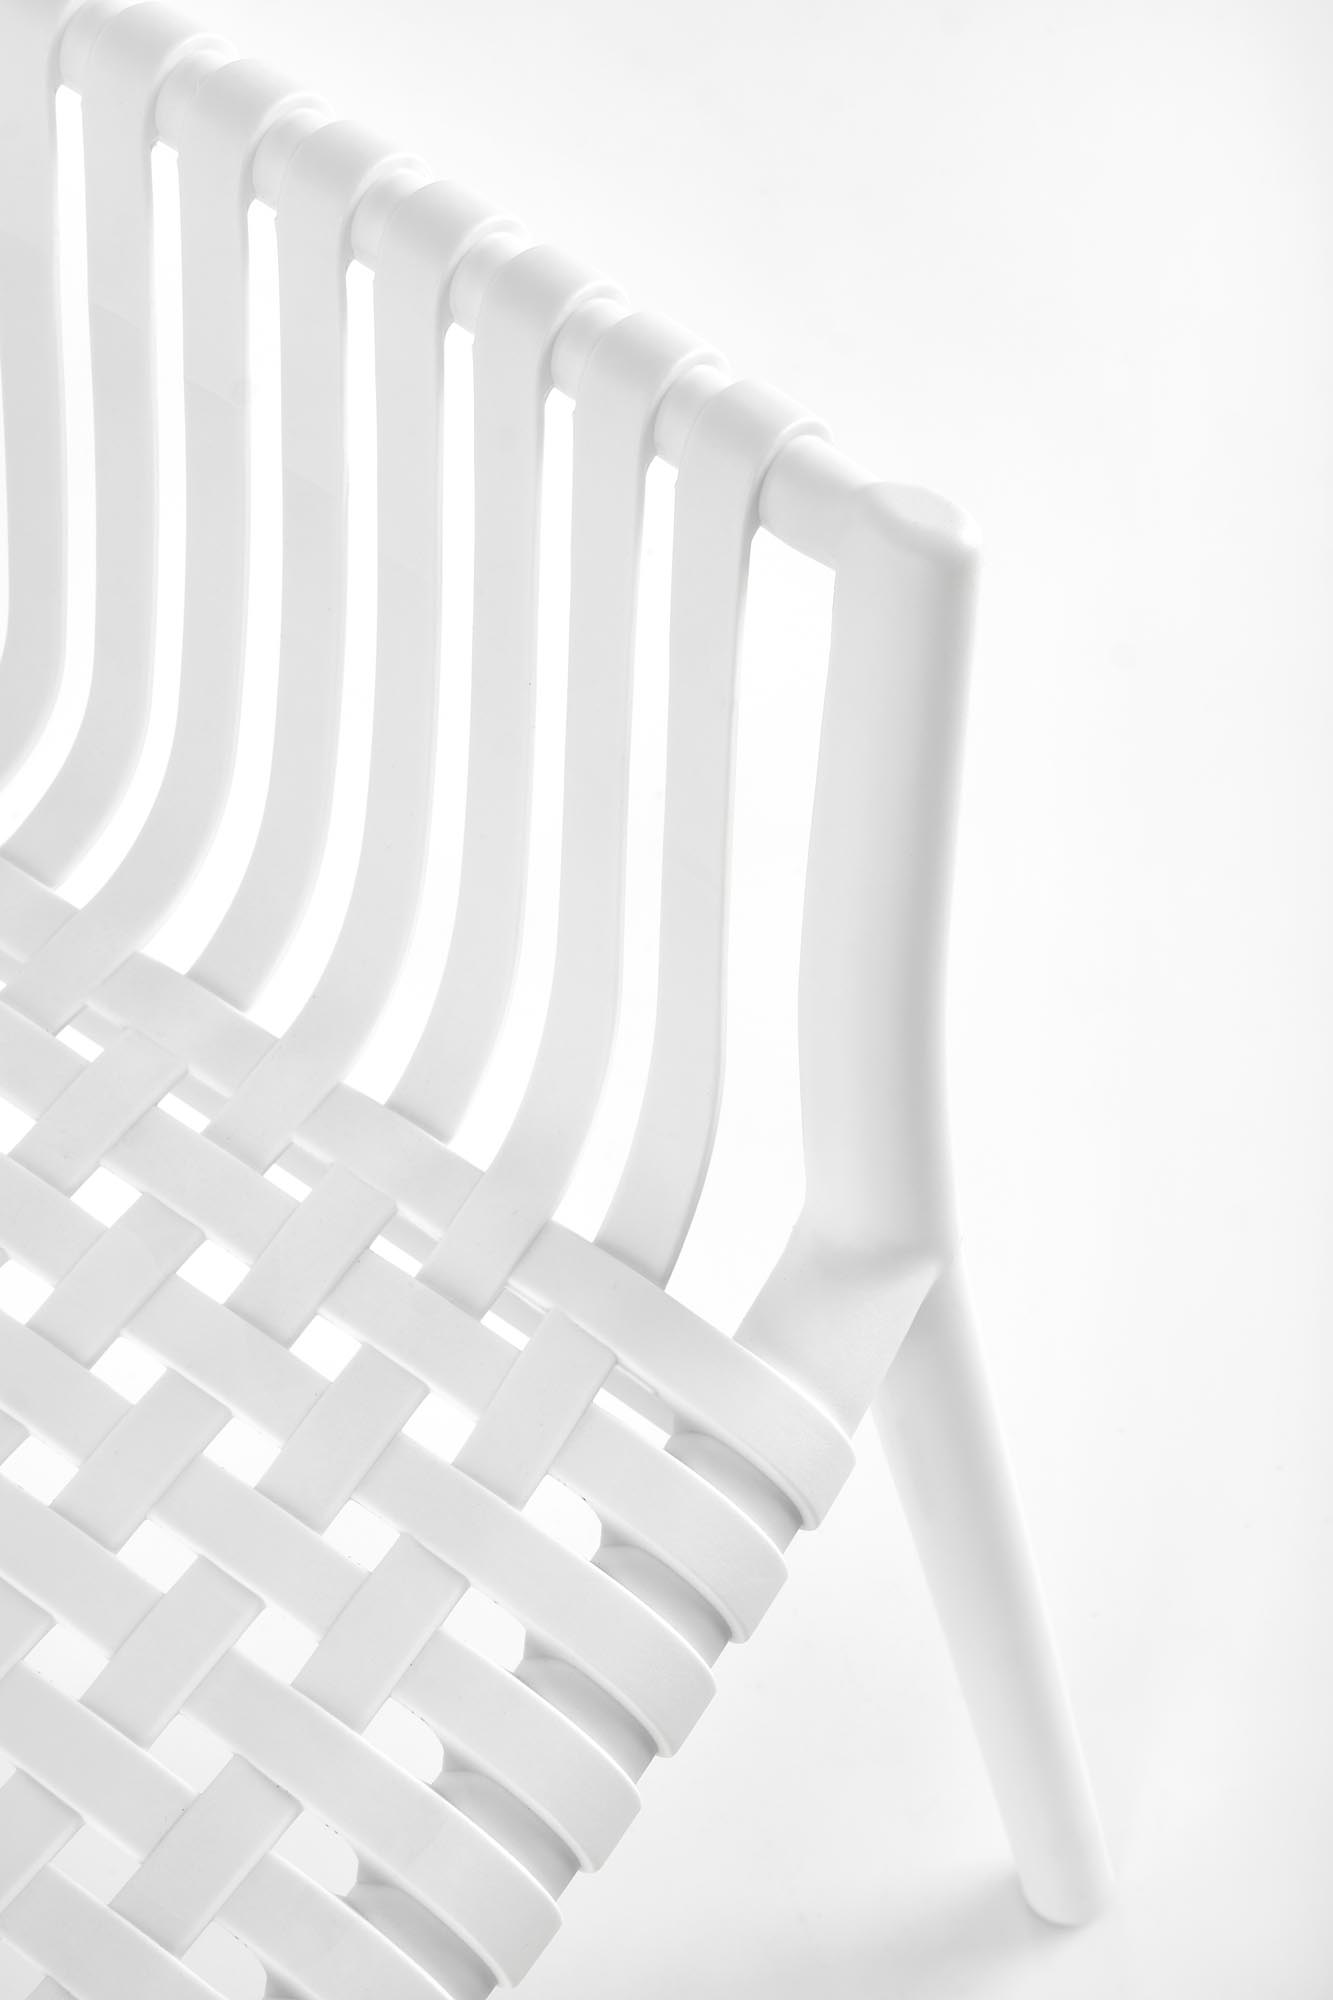 Krzesło z tworzywa sztucznego K492 - biały krzesło z tworzywa sztucznego k492 - biały